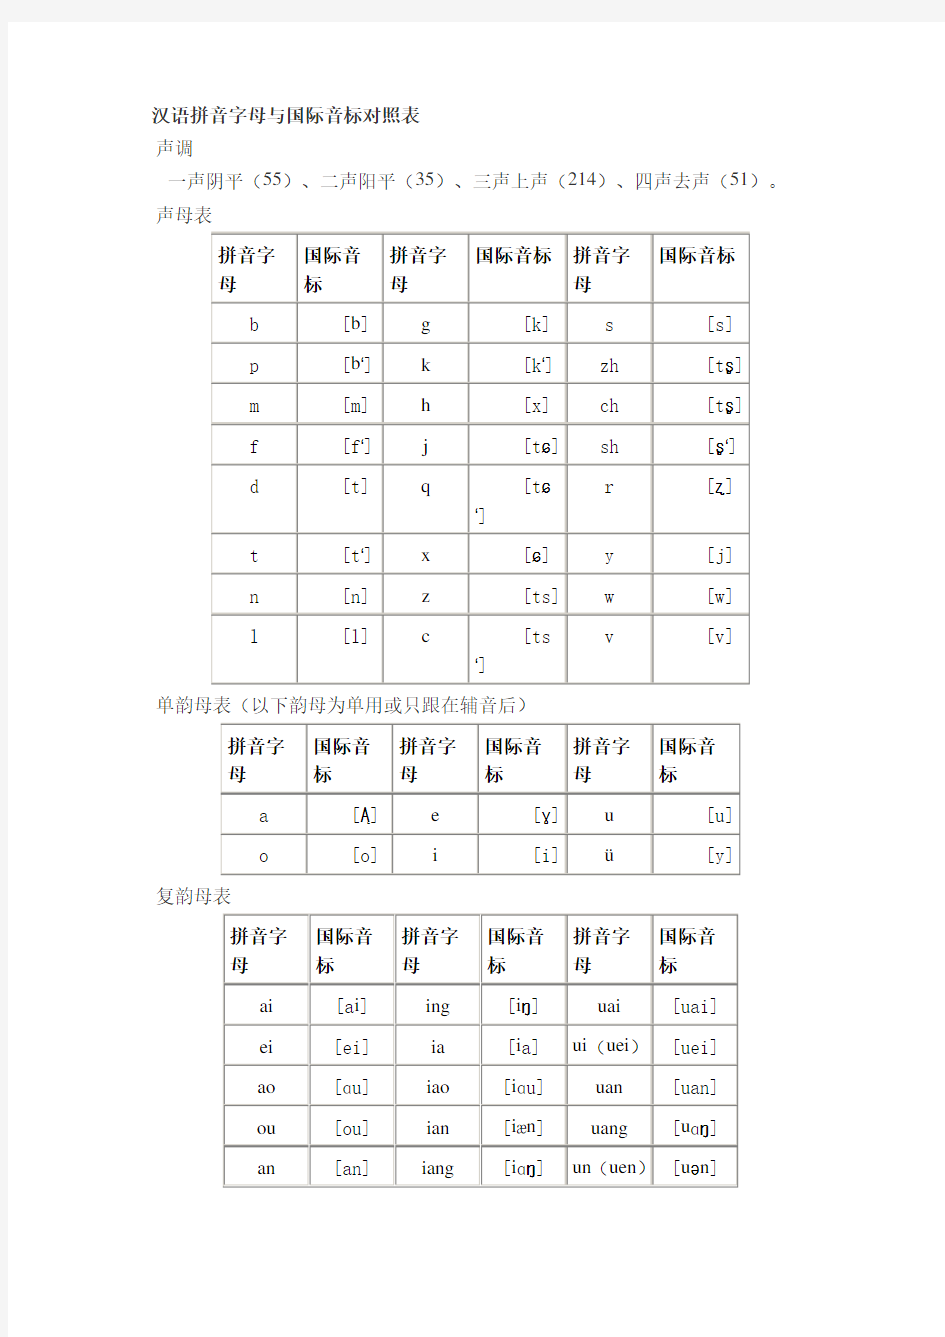 汉语拼音字母与国际音标对照表